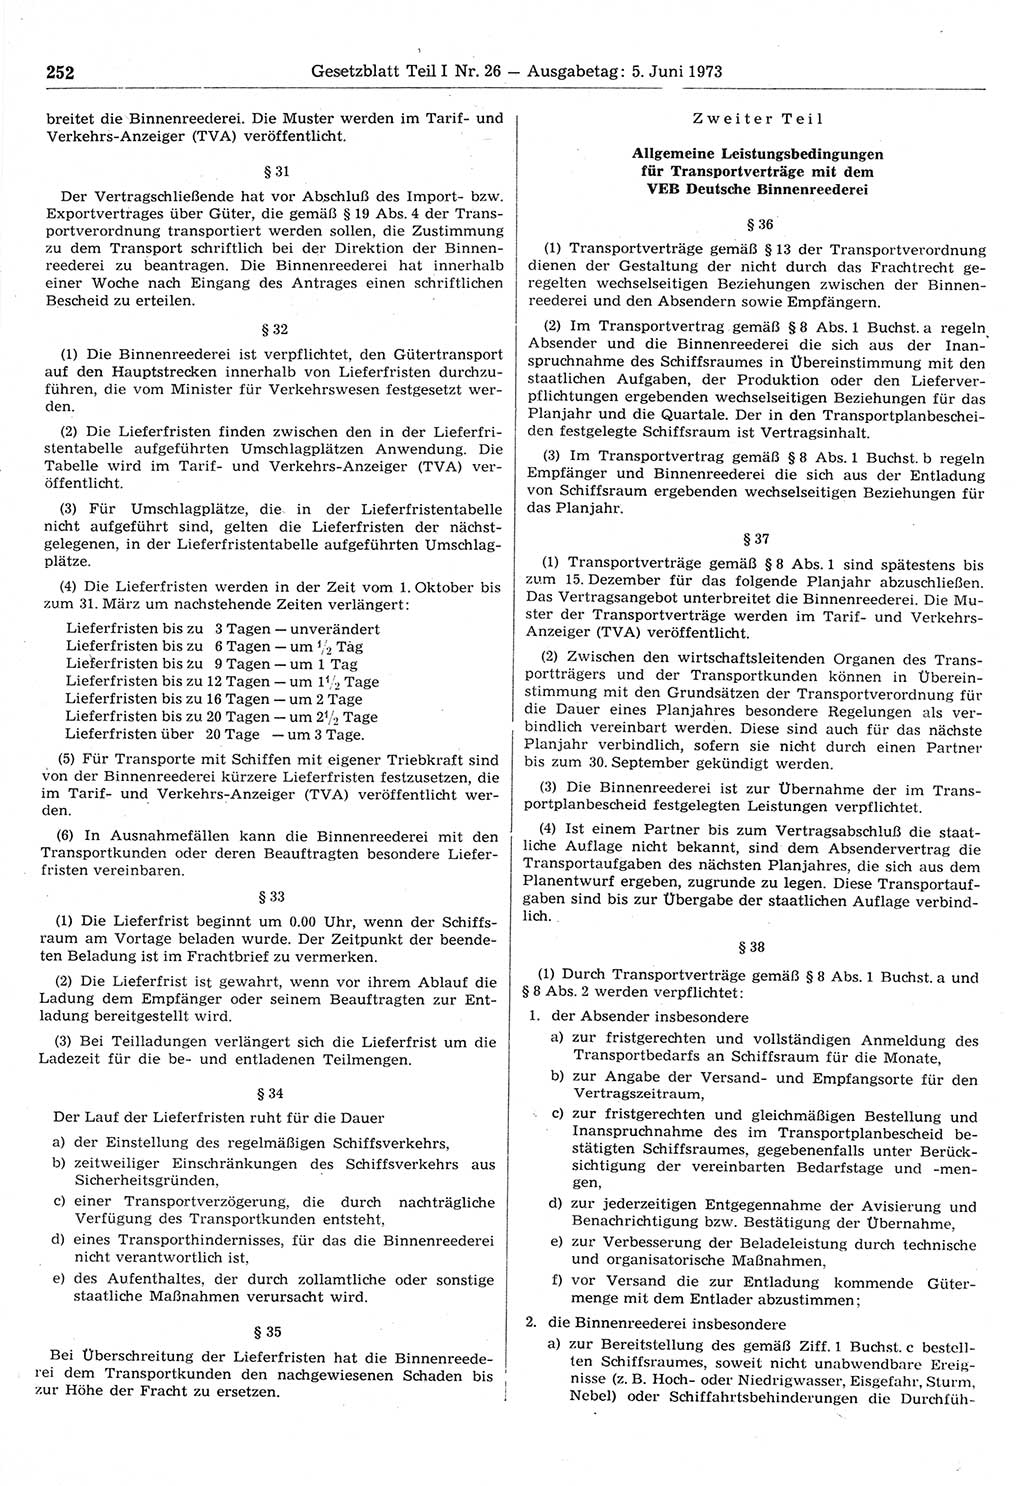 Gesetzblatt (GBl.) der Deutschen Demokratischen Republik (DDR) Teil Ⅰ 1973, Seite 252 (GBl. DDR Ⅰ 1973, S. 252)